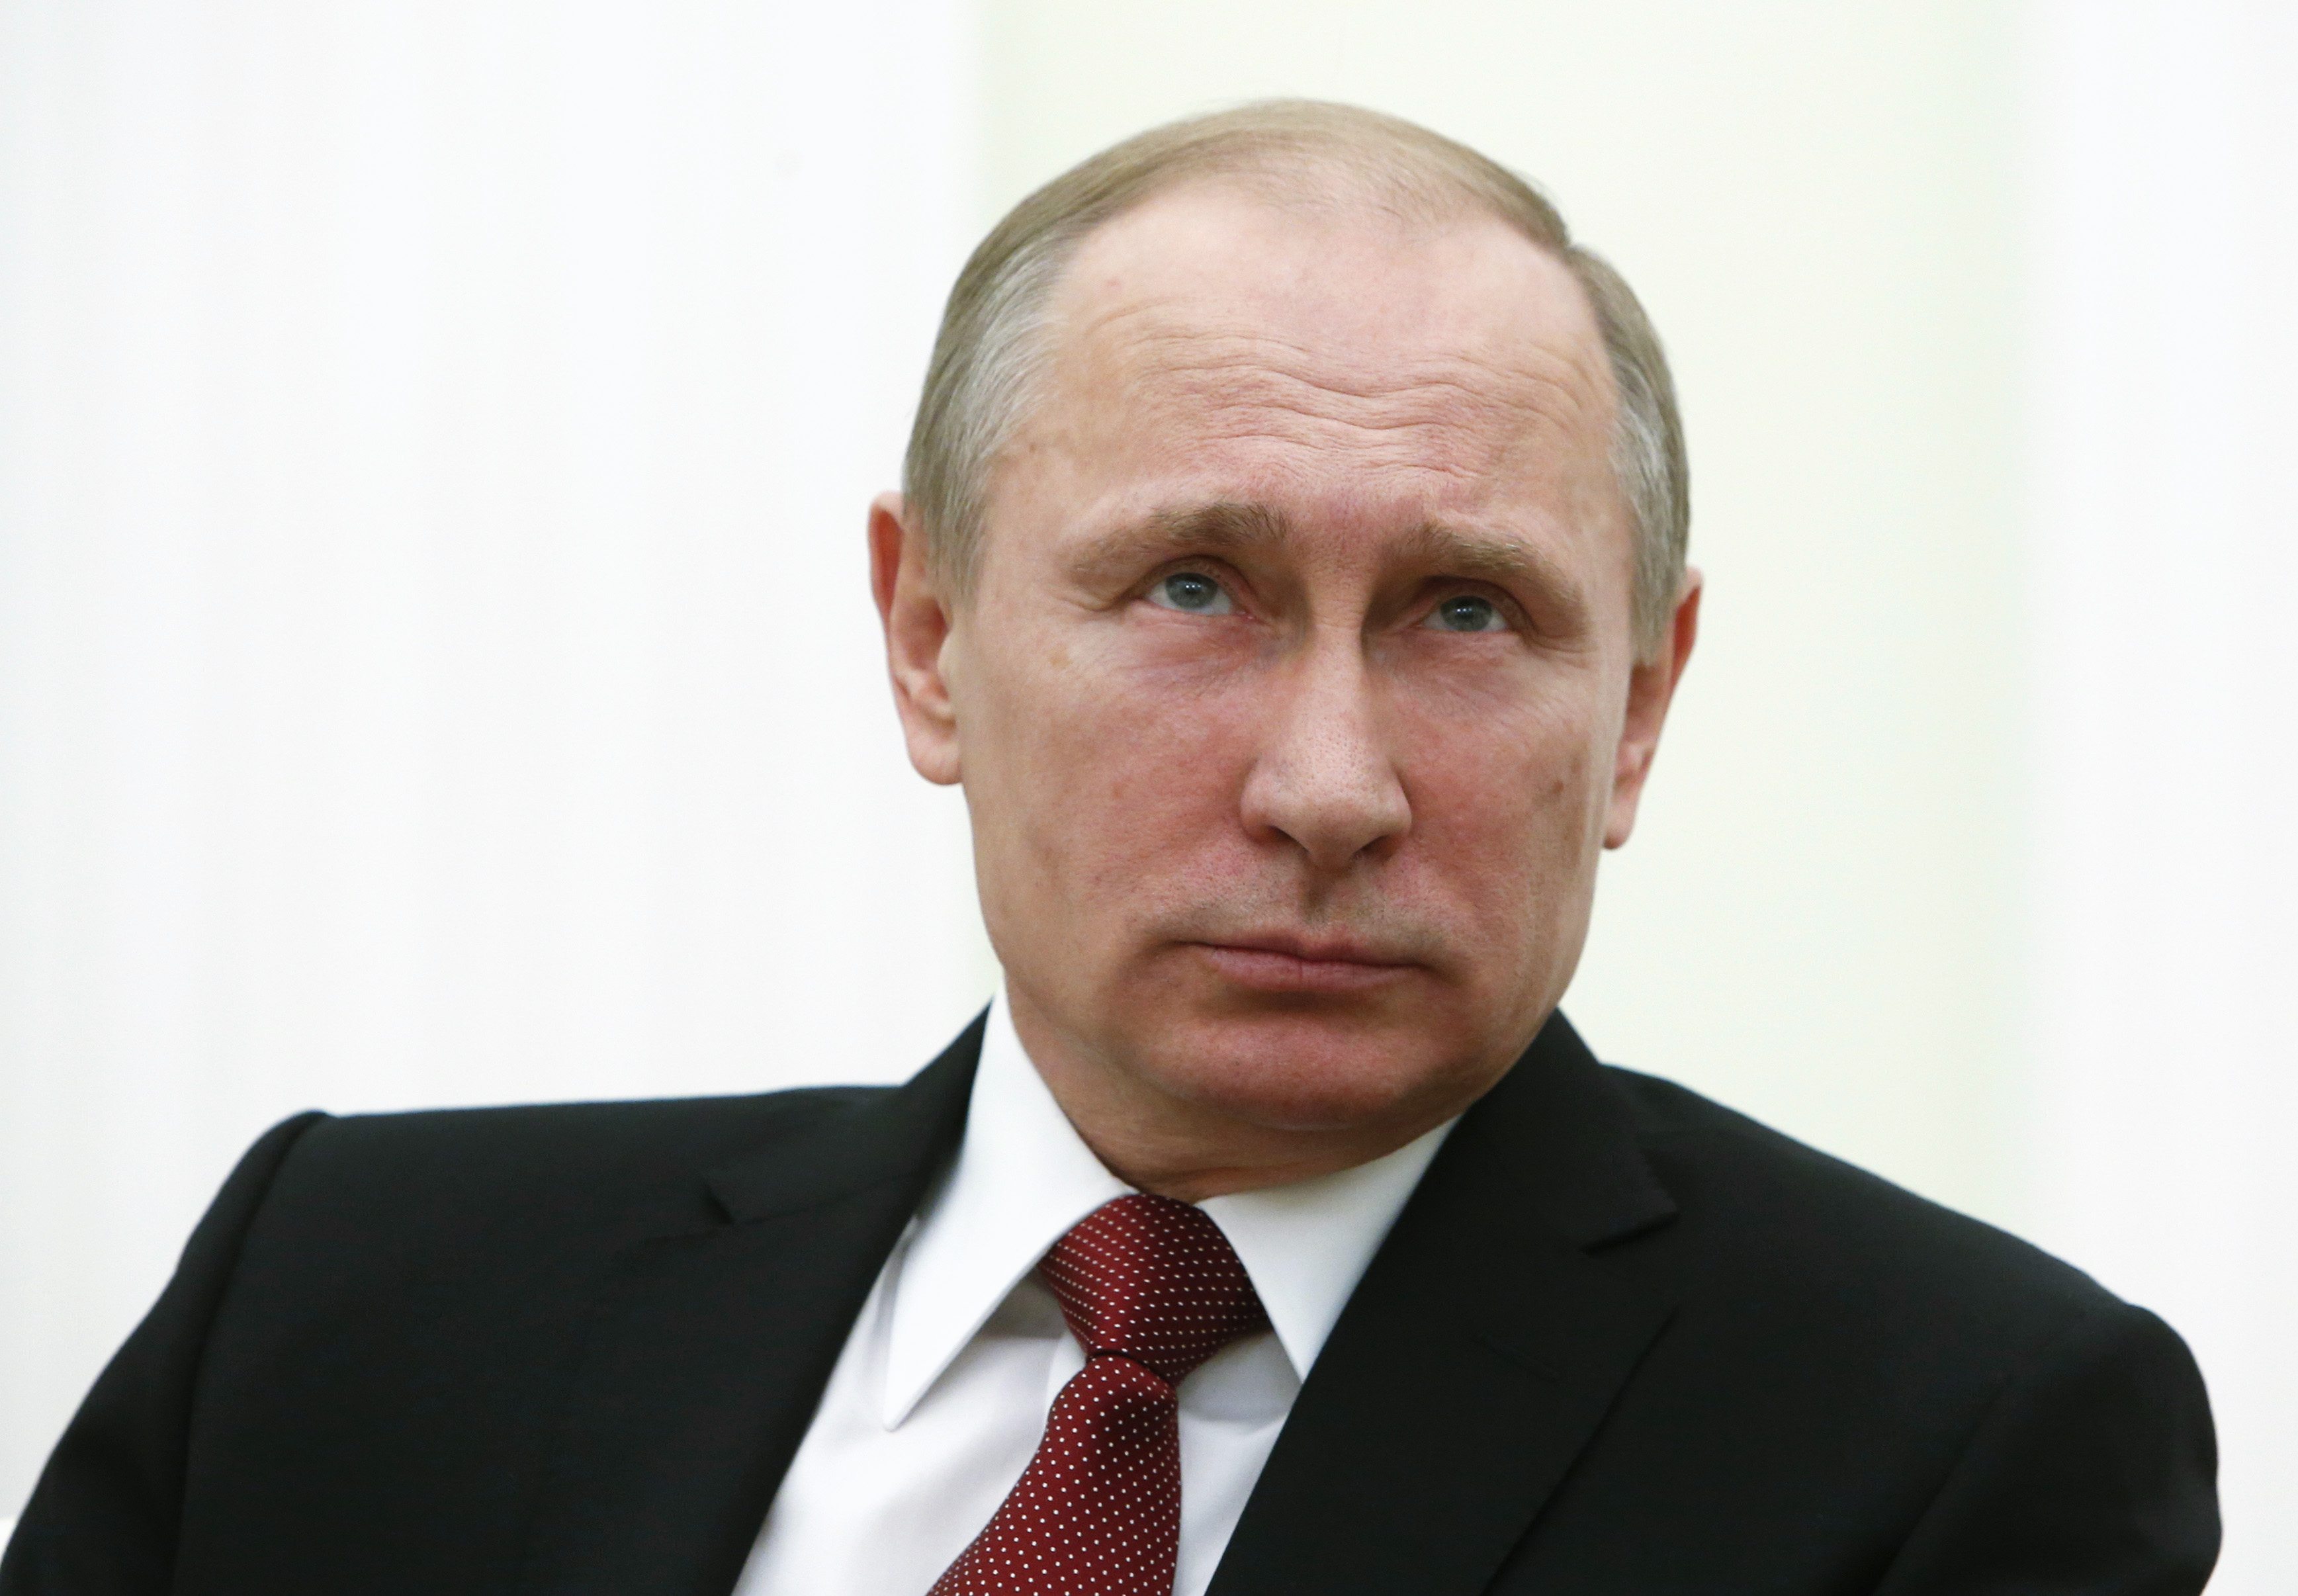 Enfurecido por las burlas, Putin prohíbe los memes en Rusia